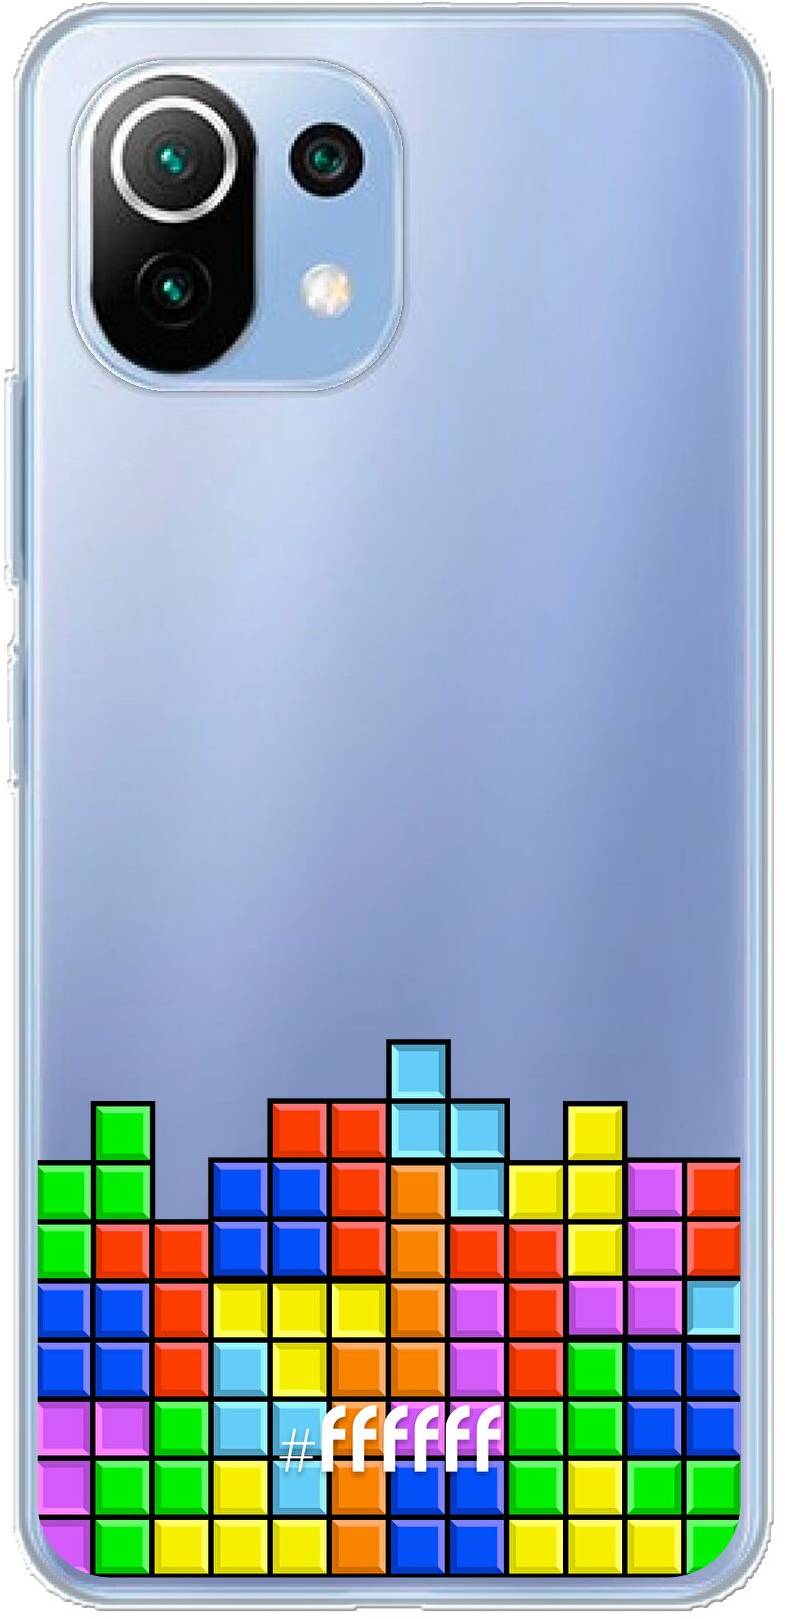 Tetris Mi 11 Lite